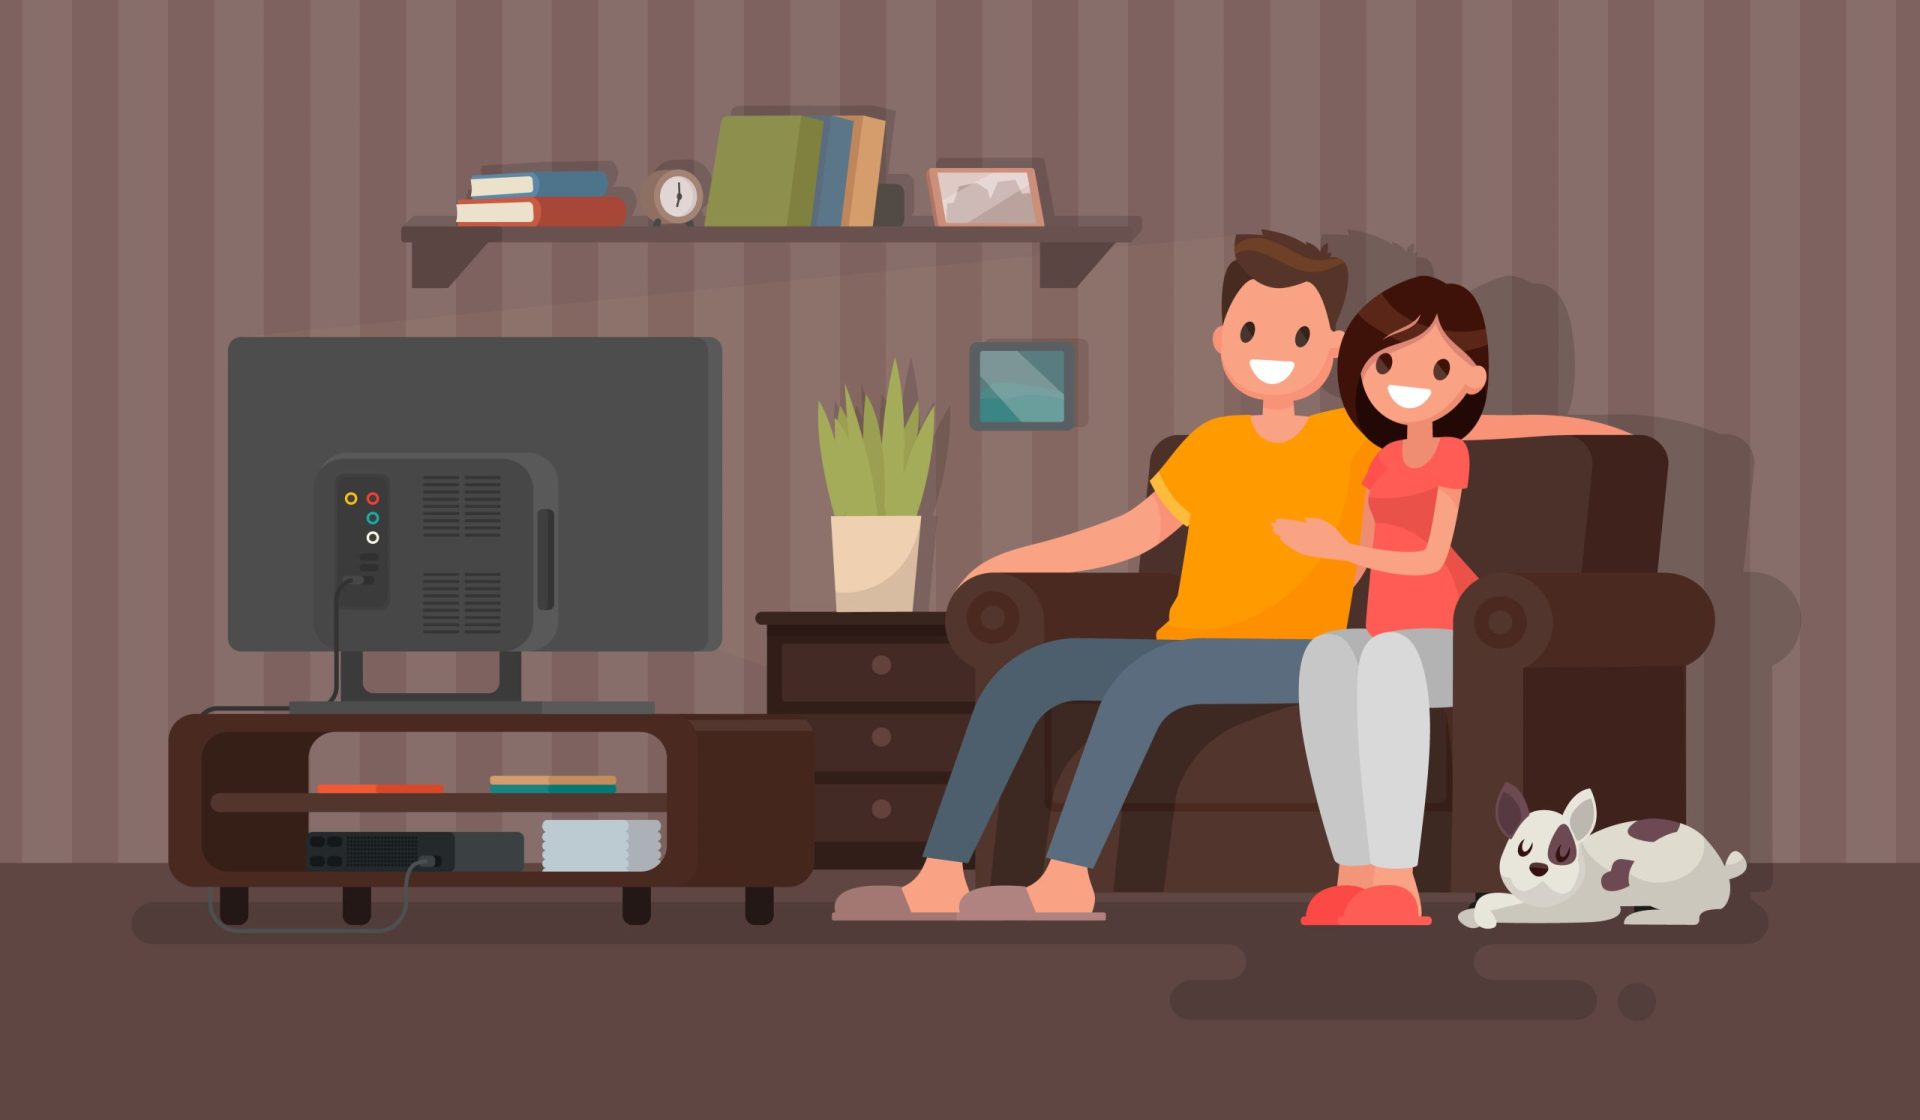 Ver televisão ajuda a melhorar uma relação amorosa